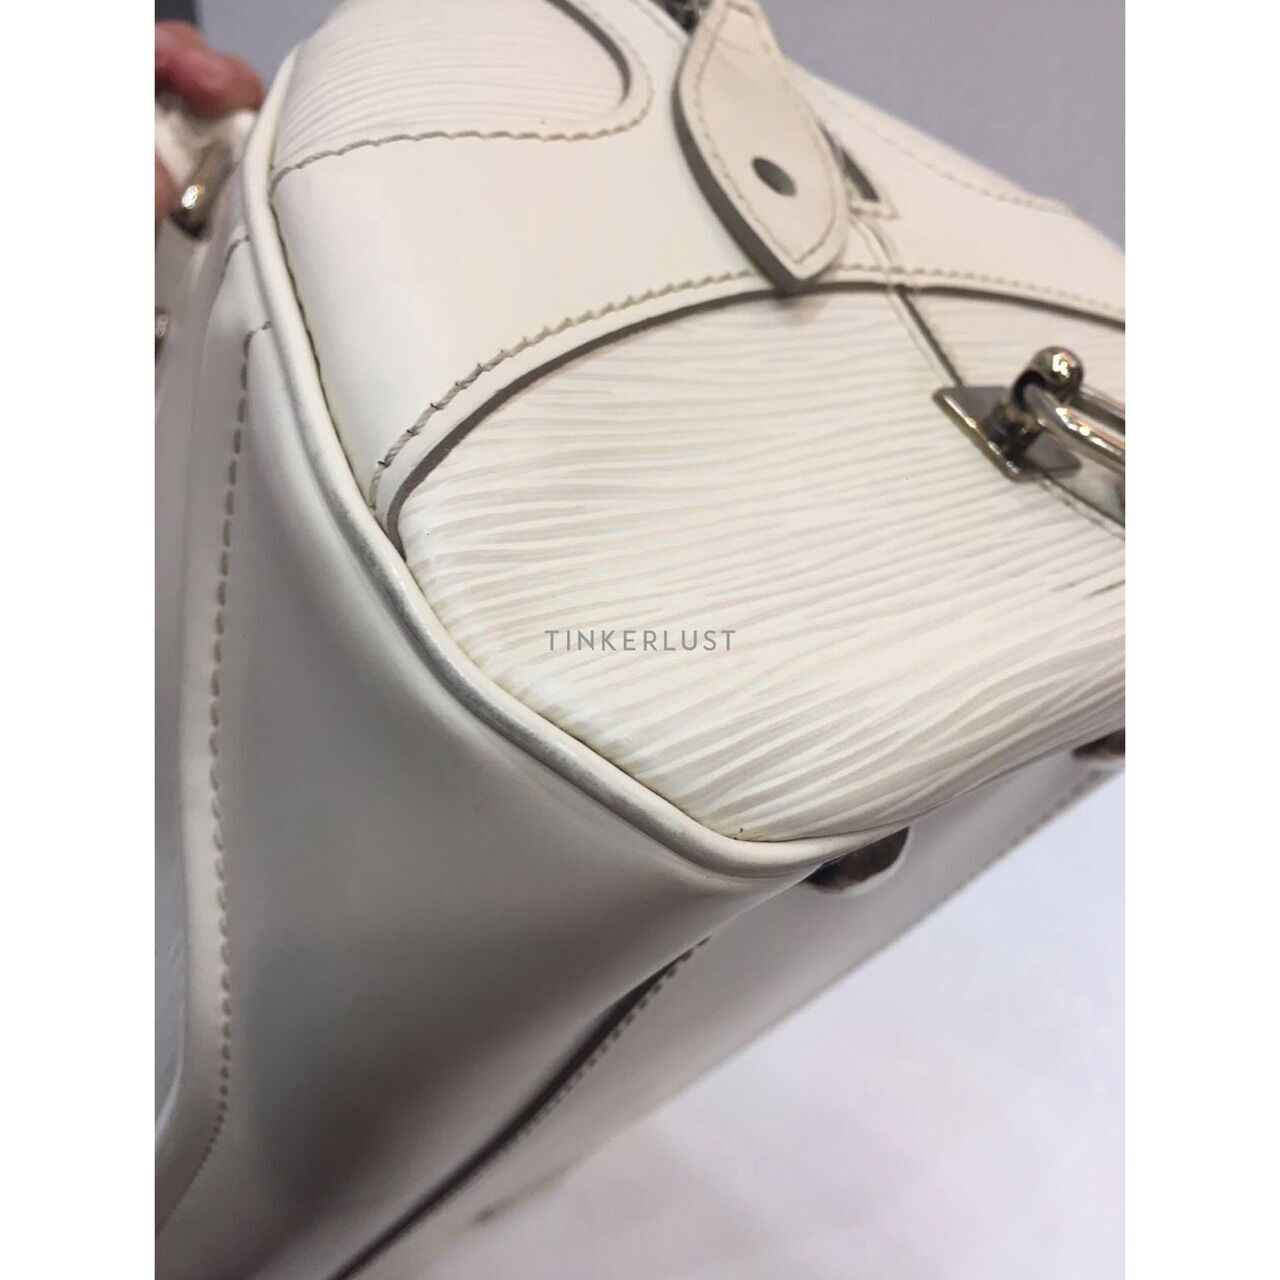 Louis Vuitton Bowling Epi Leather White PM 2007 Handbag 